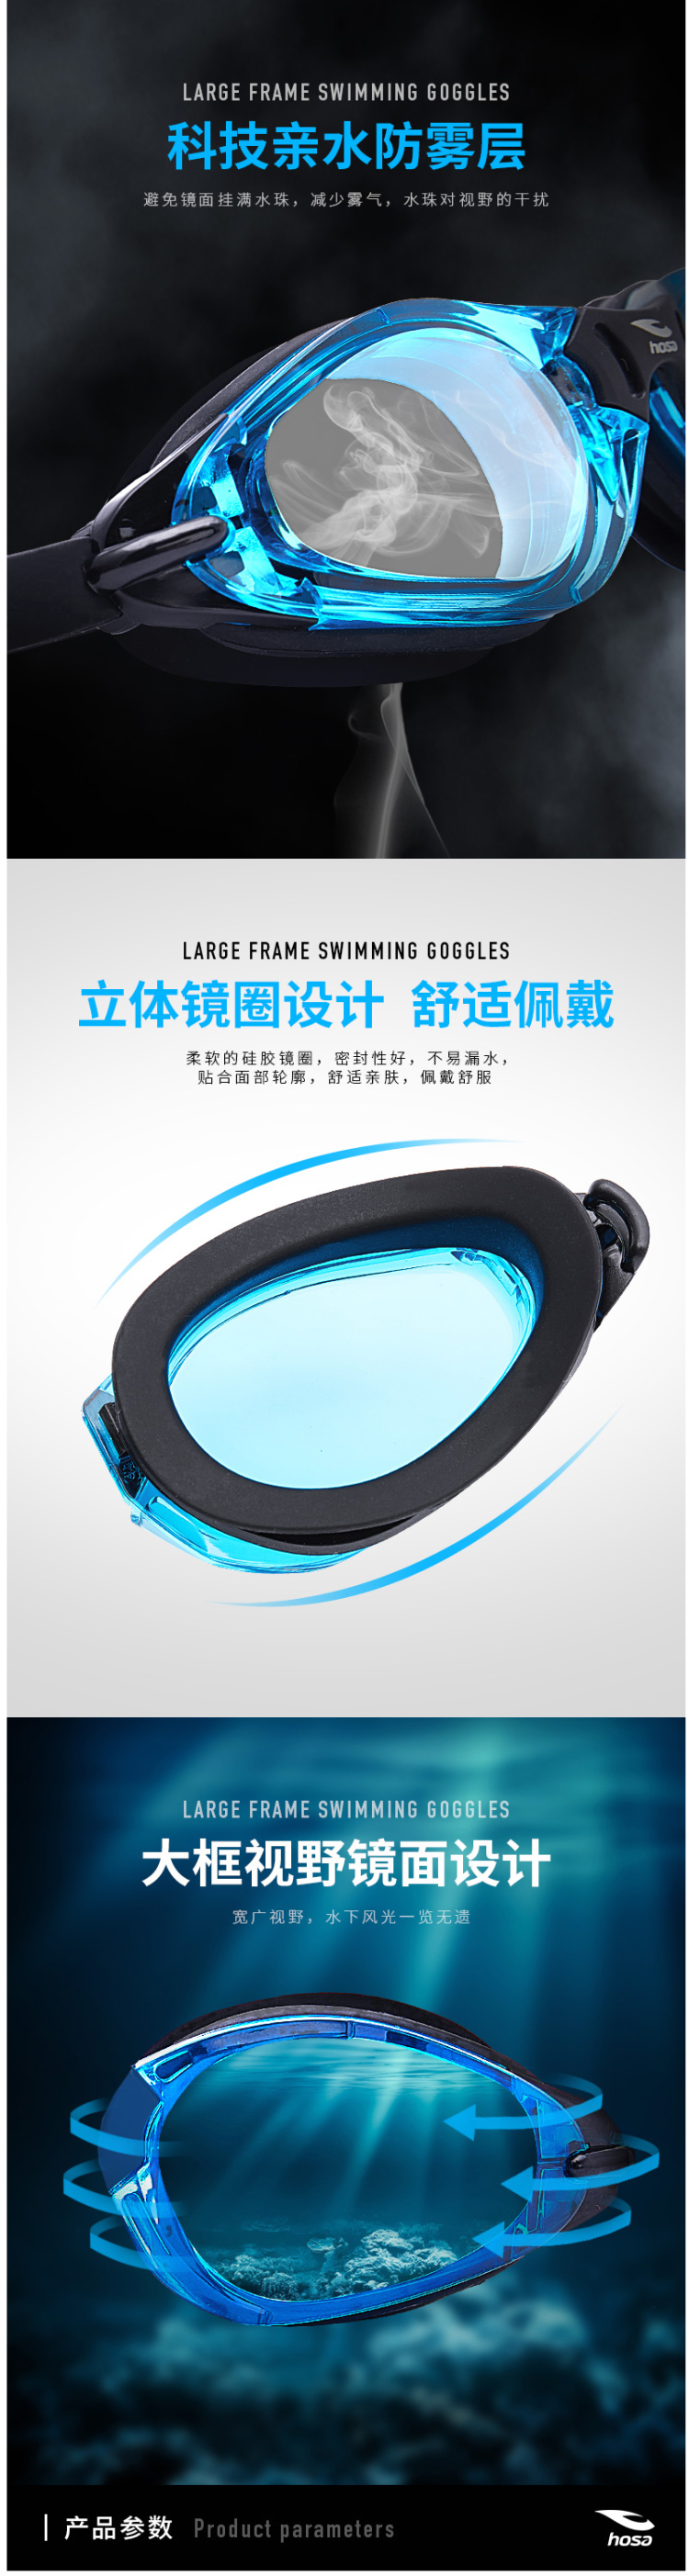 国际泳联合作品牌 浩沙 高清防雾泳镜 图2